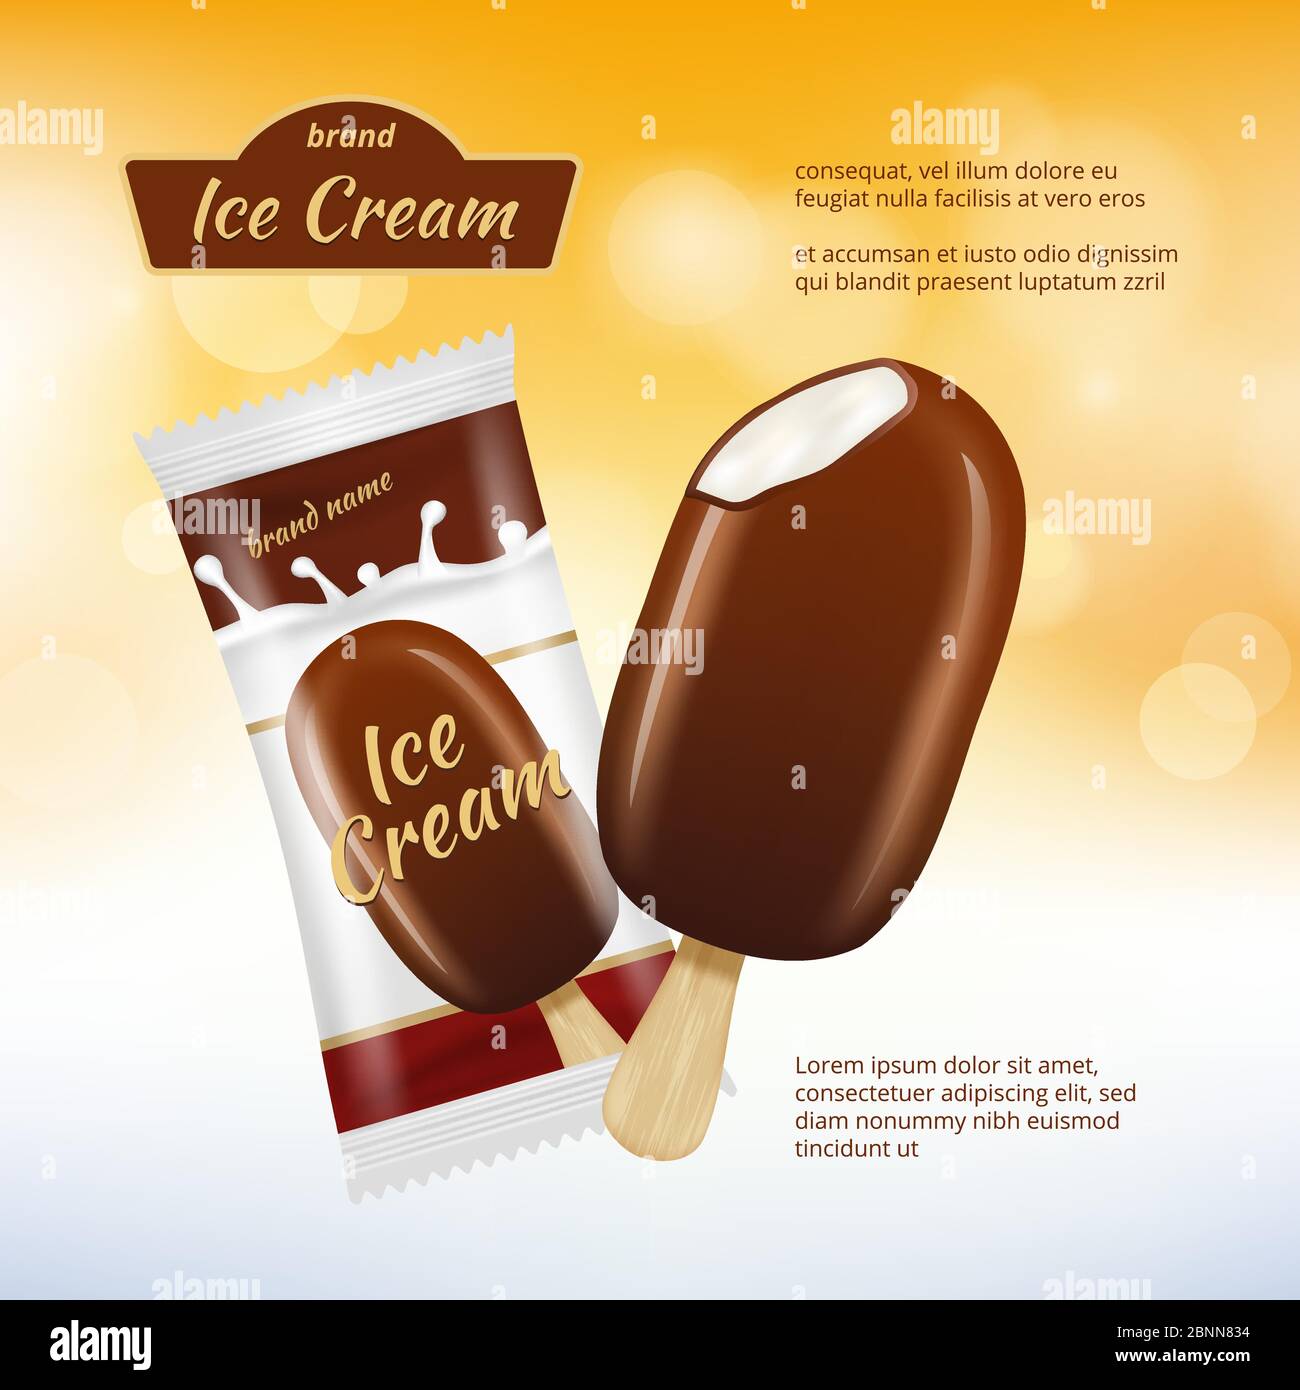 Affiche crème glacée au chocolat. Des images réalistes de publicité au chocolat avec emballage alimentaire Illustration de Vecteur